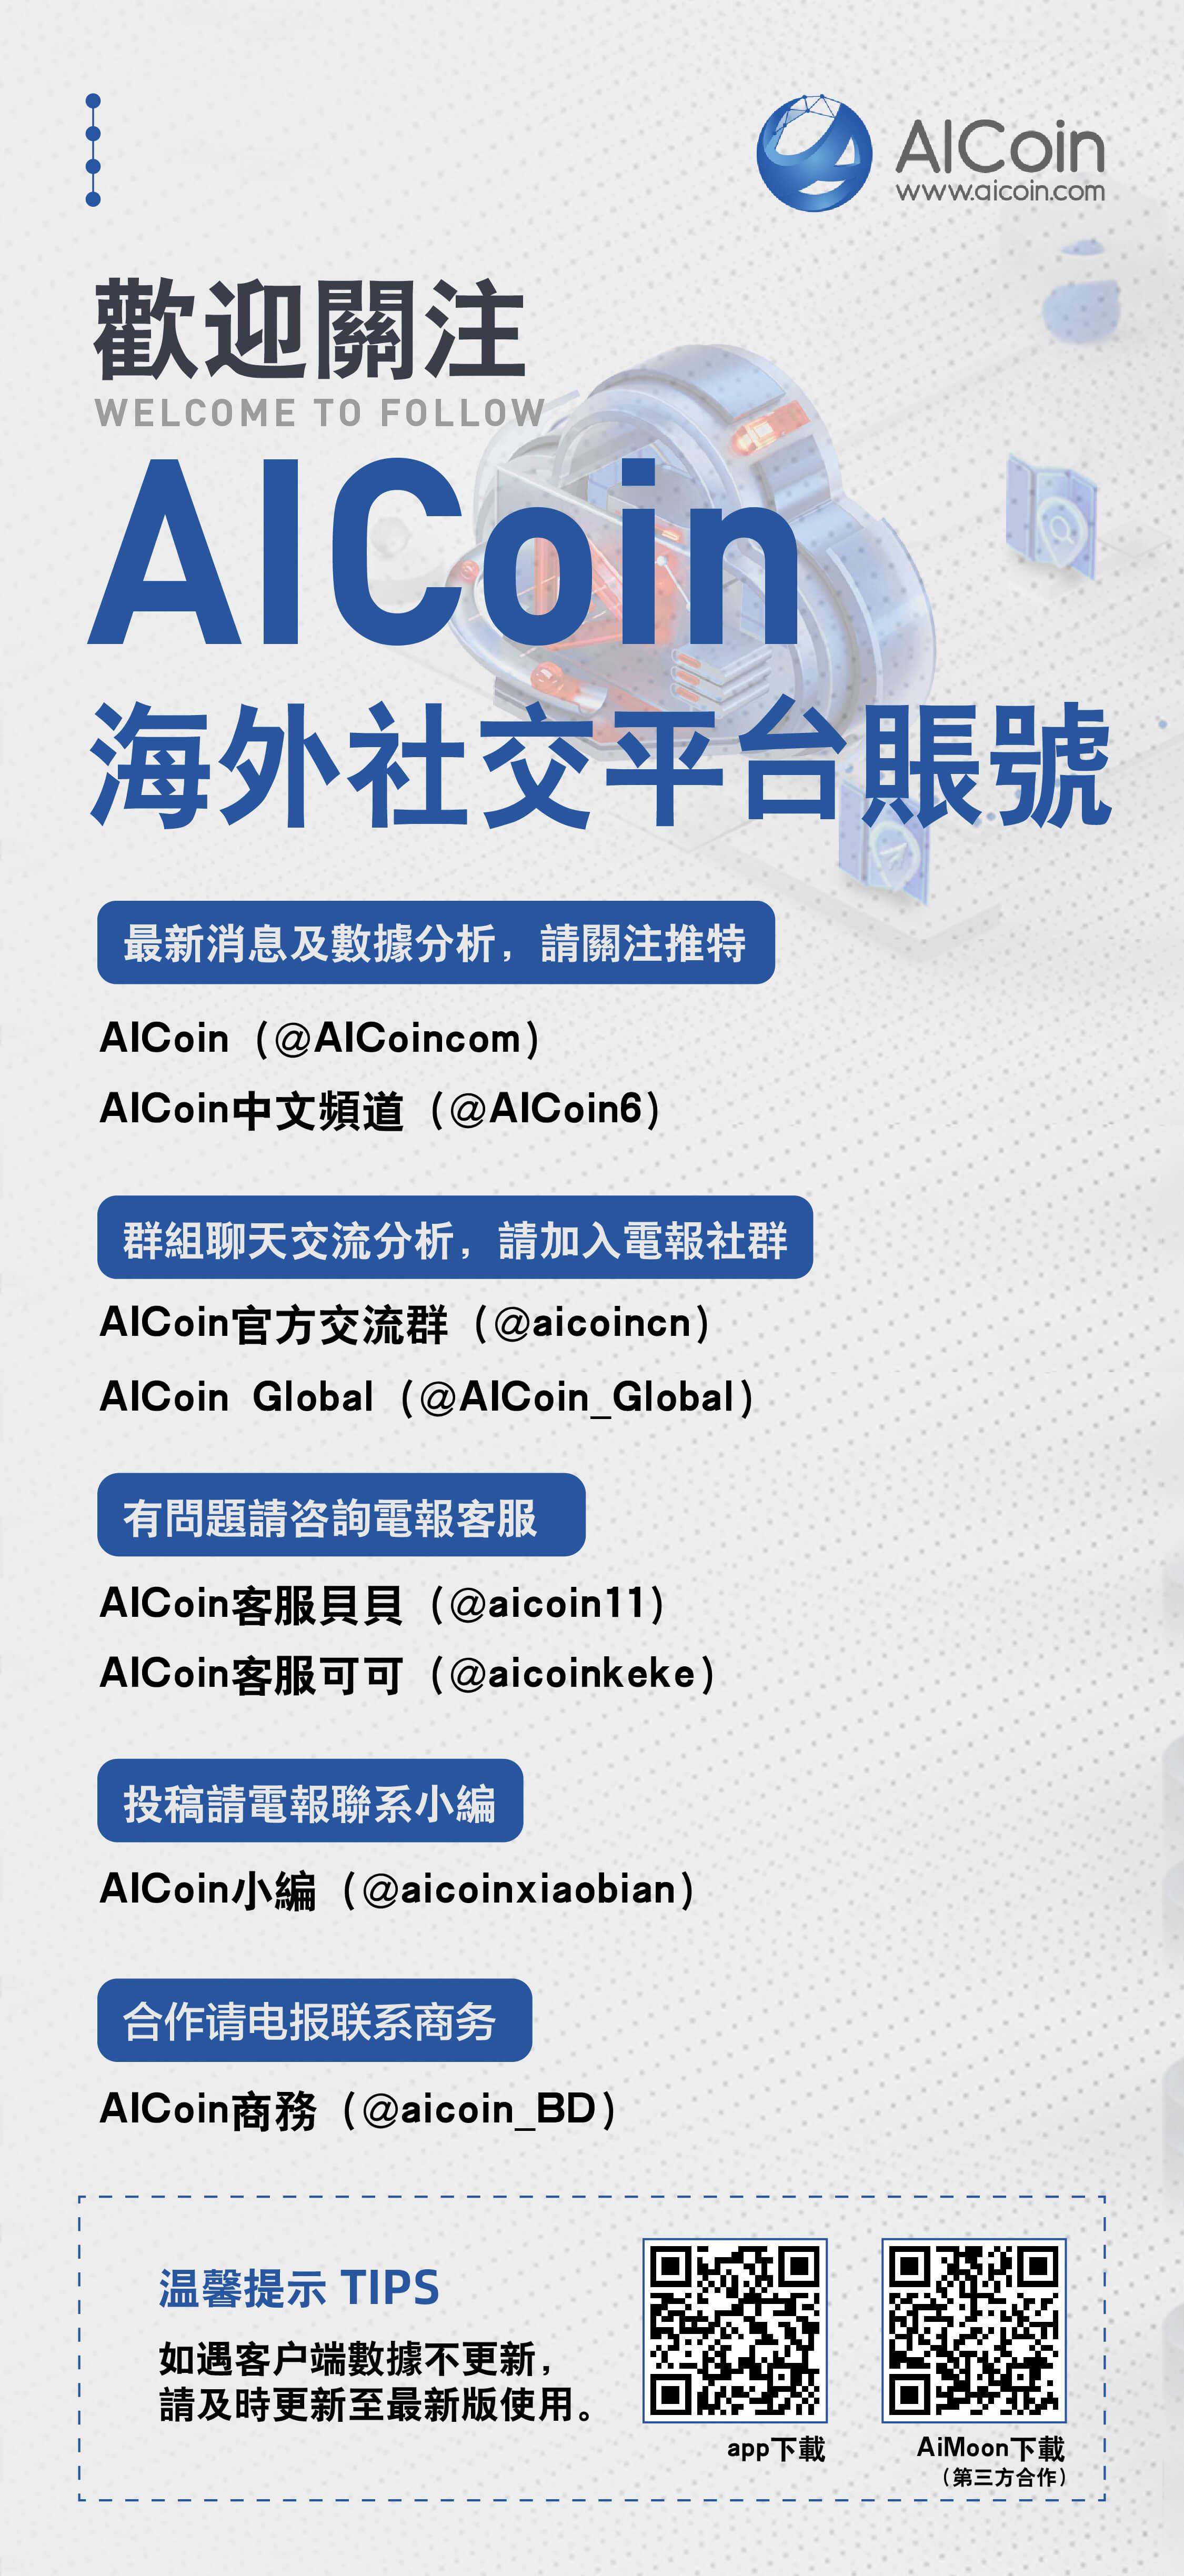 歡迎關注AICoin海外社交平台_aicoin_图1